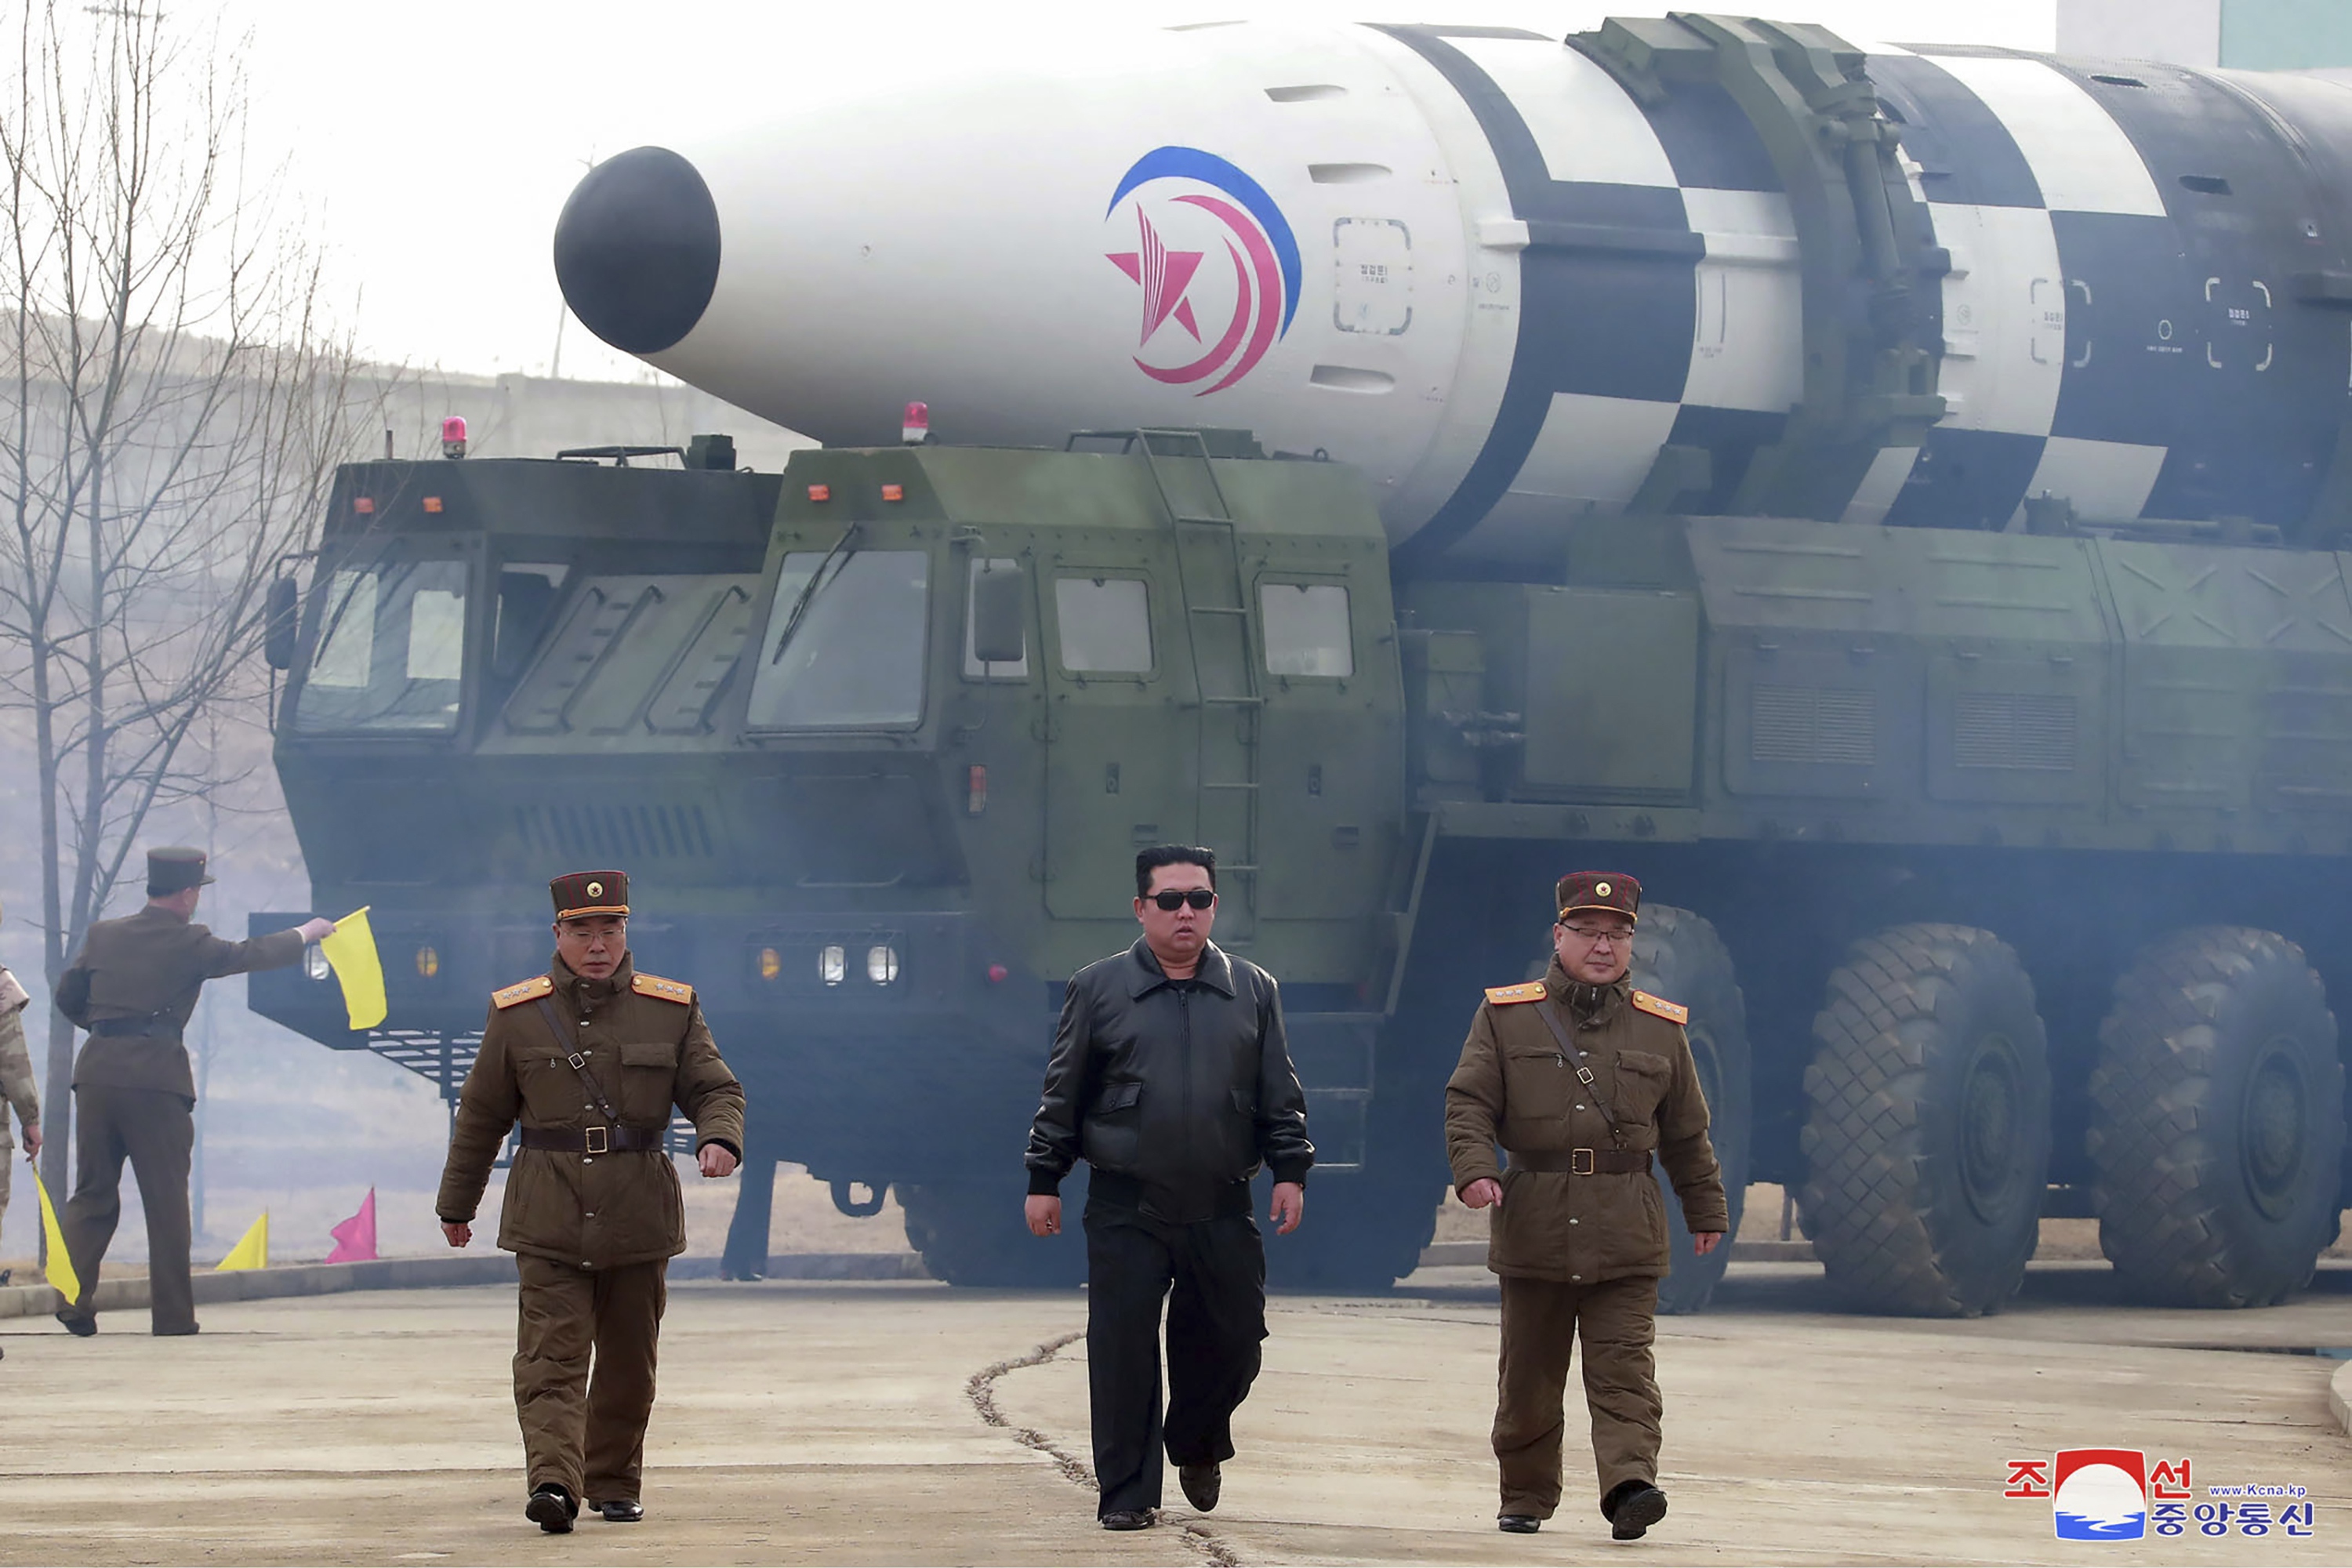 Noord-Korea. Kim Jong Un bij wat volgens de Noord-Koreaanse regering de Hwasong-17 raket is.